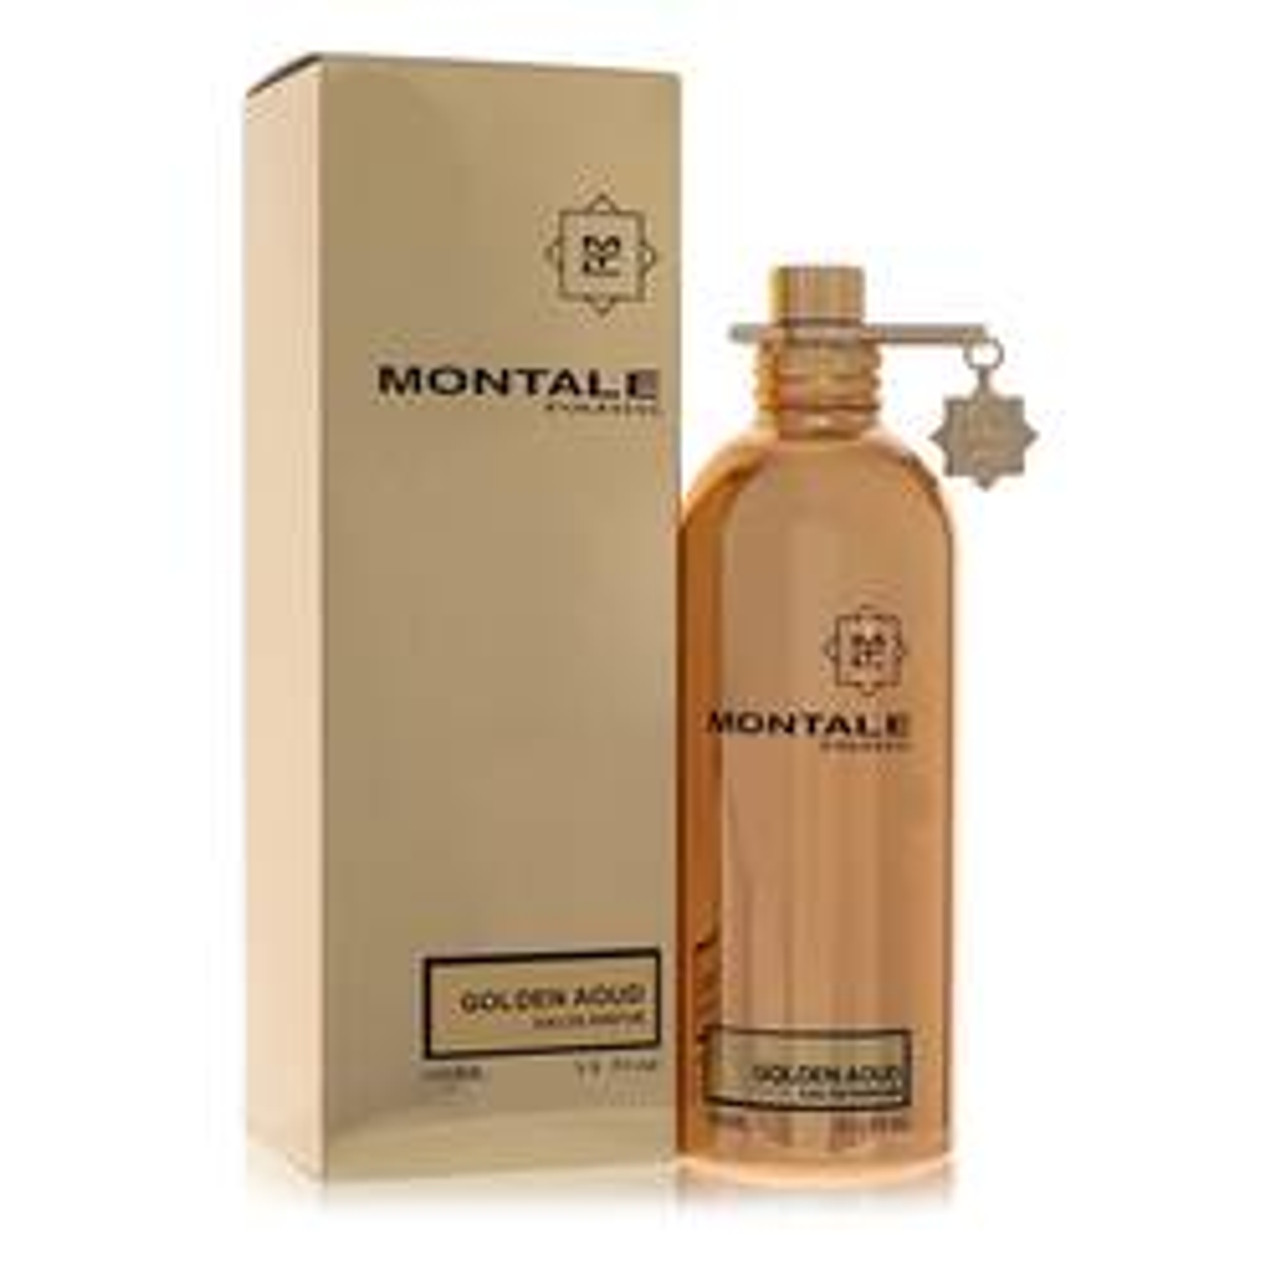 Montale Golden Aoud Perfume By Montale Eau De Parfum Spray 3.3 oz for Women - *Pre-Order